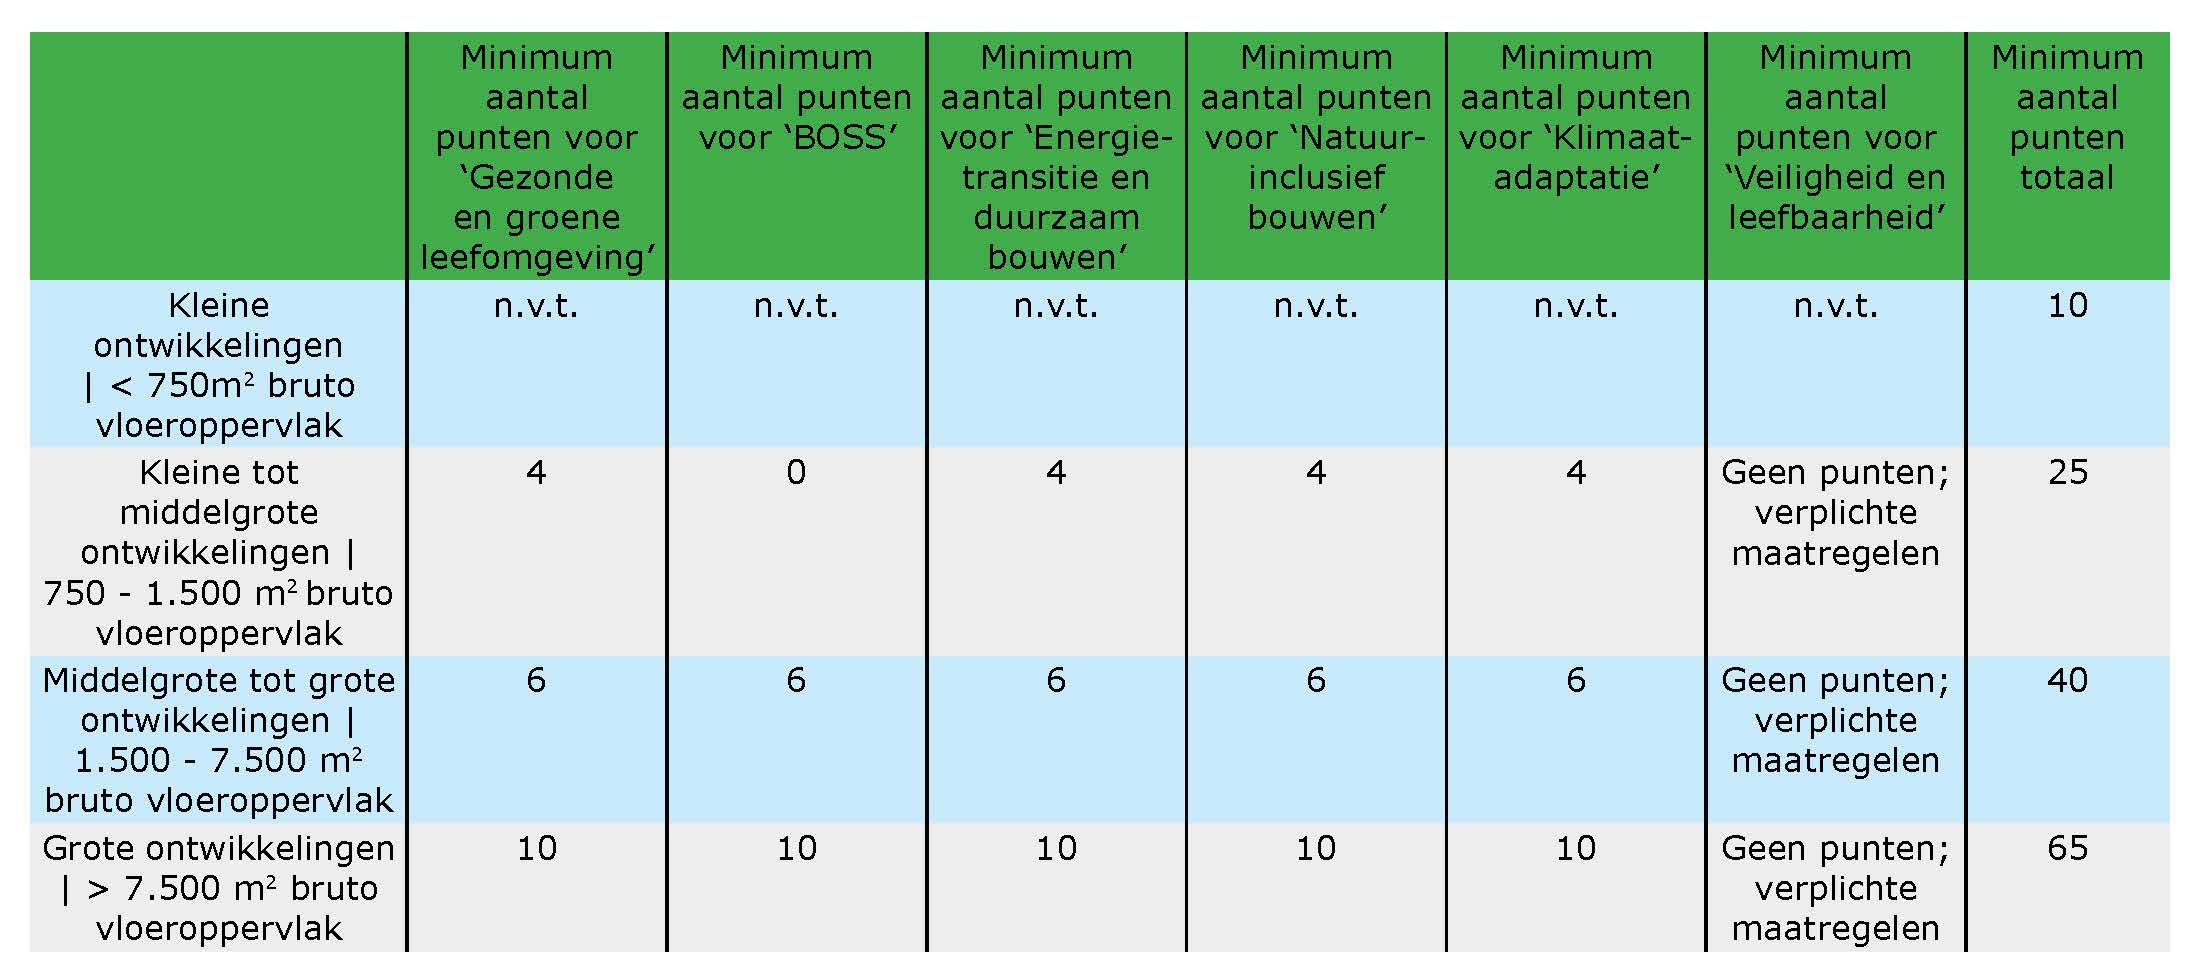 Het puntensysteem van Veenendaal in tabelvorm hier weergegeven. Helaas teveel content voor alternative tekst. 